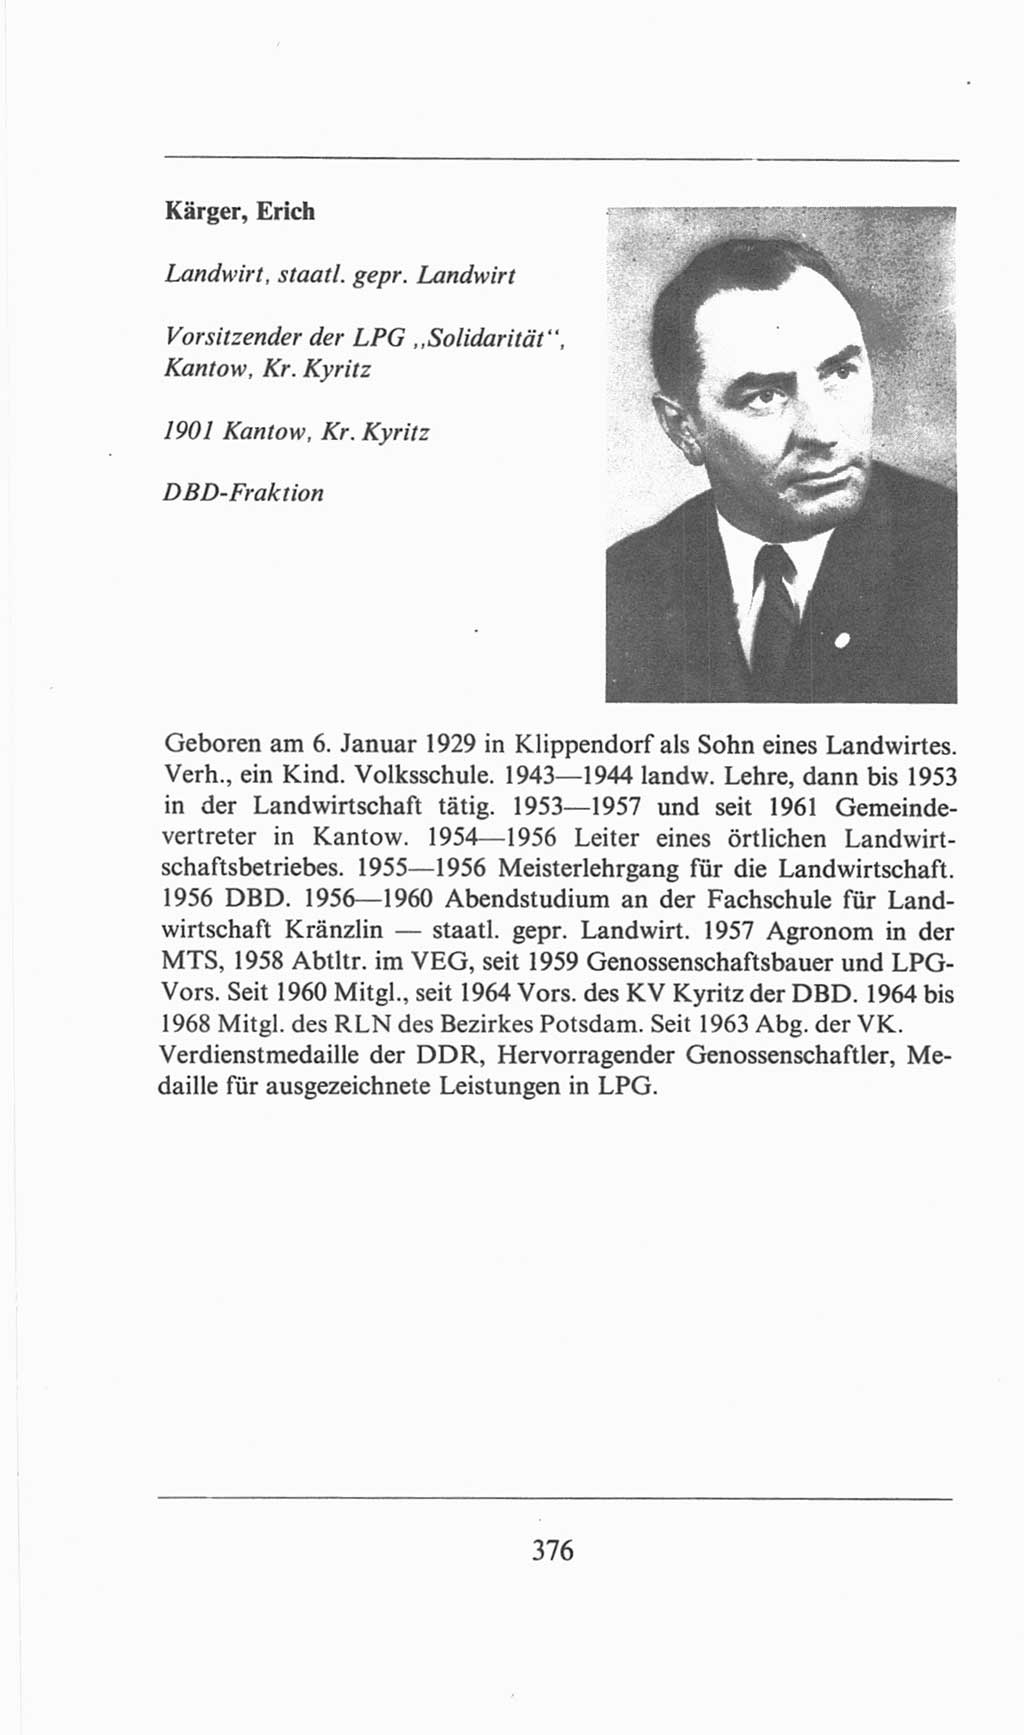 Volkskammer (VK) der Deutschen Demokratischen Republik (DDR), 6. Wahlperiode 1971-1976, Seite 376 (VK. DDR 6. WP. 1971-1976, S. 376)